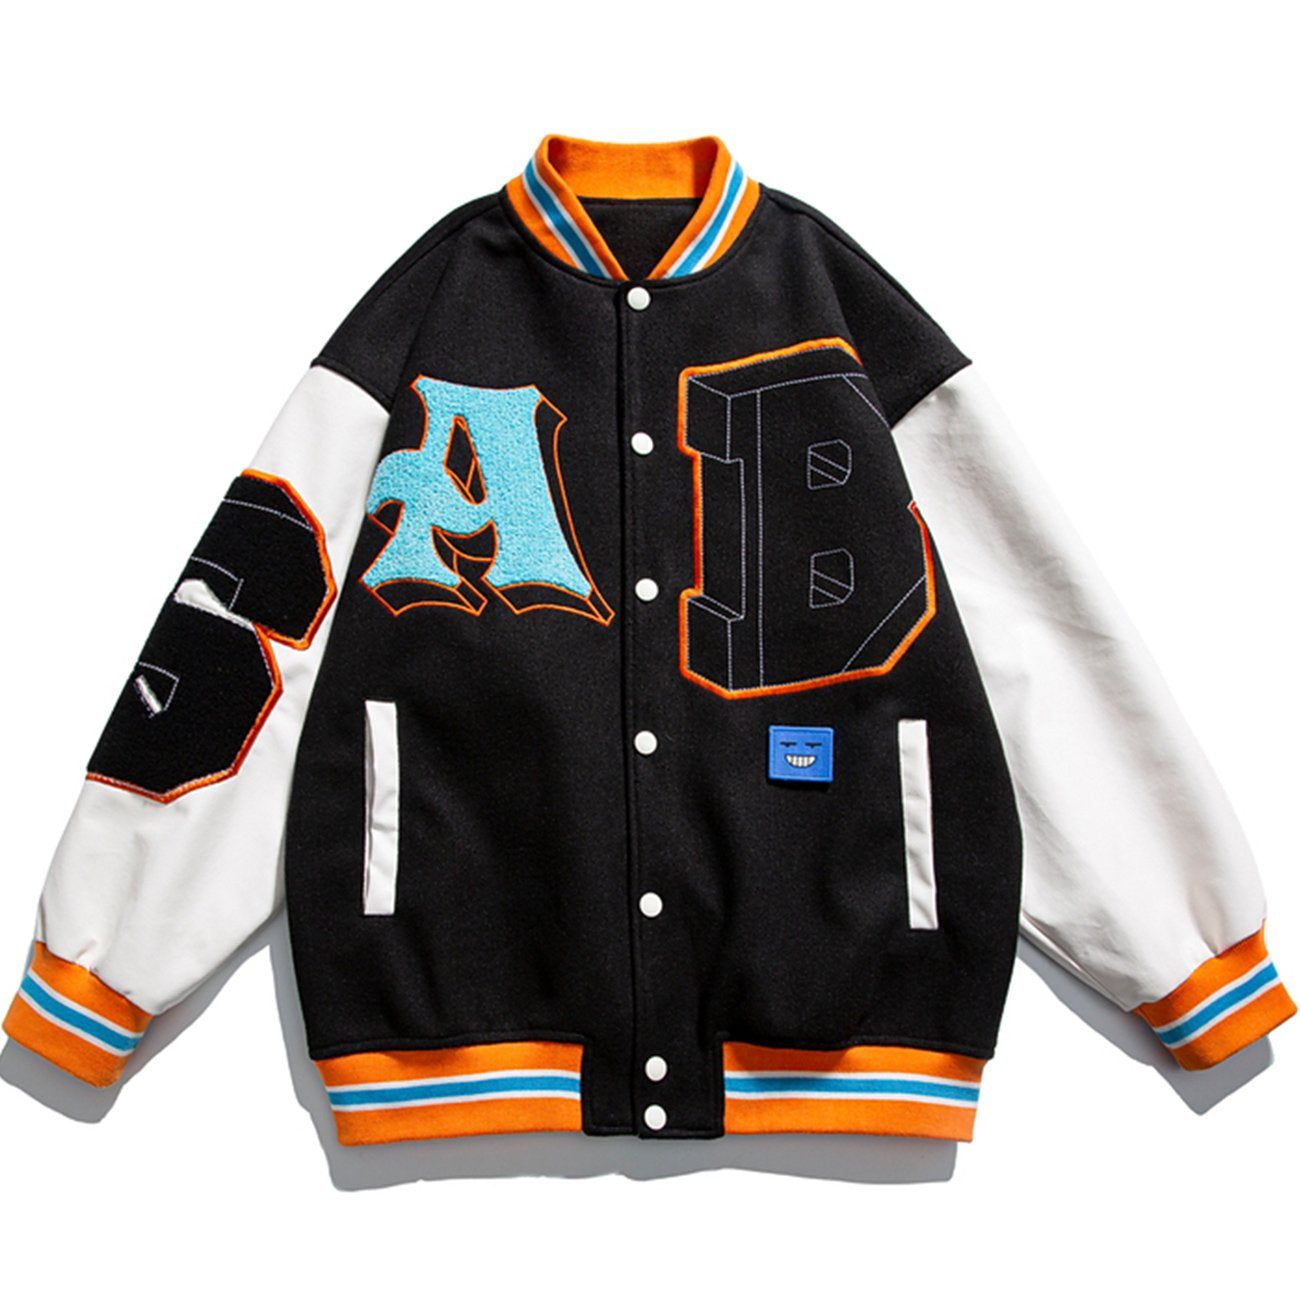 Eprezzy® - Letters AB Stitching Jacket Streetwear Fashion - eprezzy.com